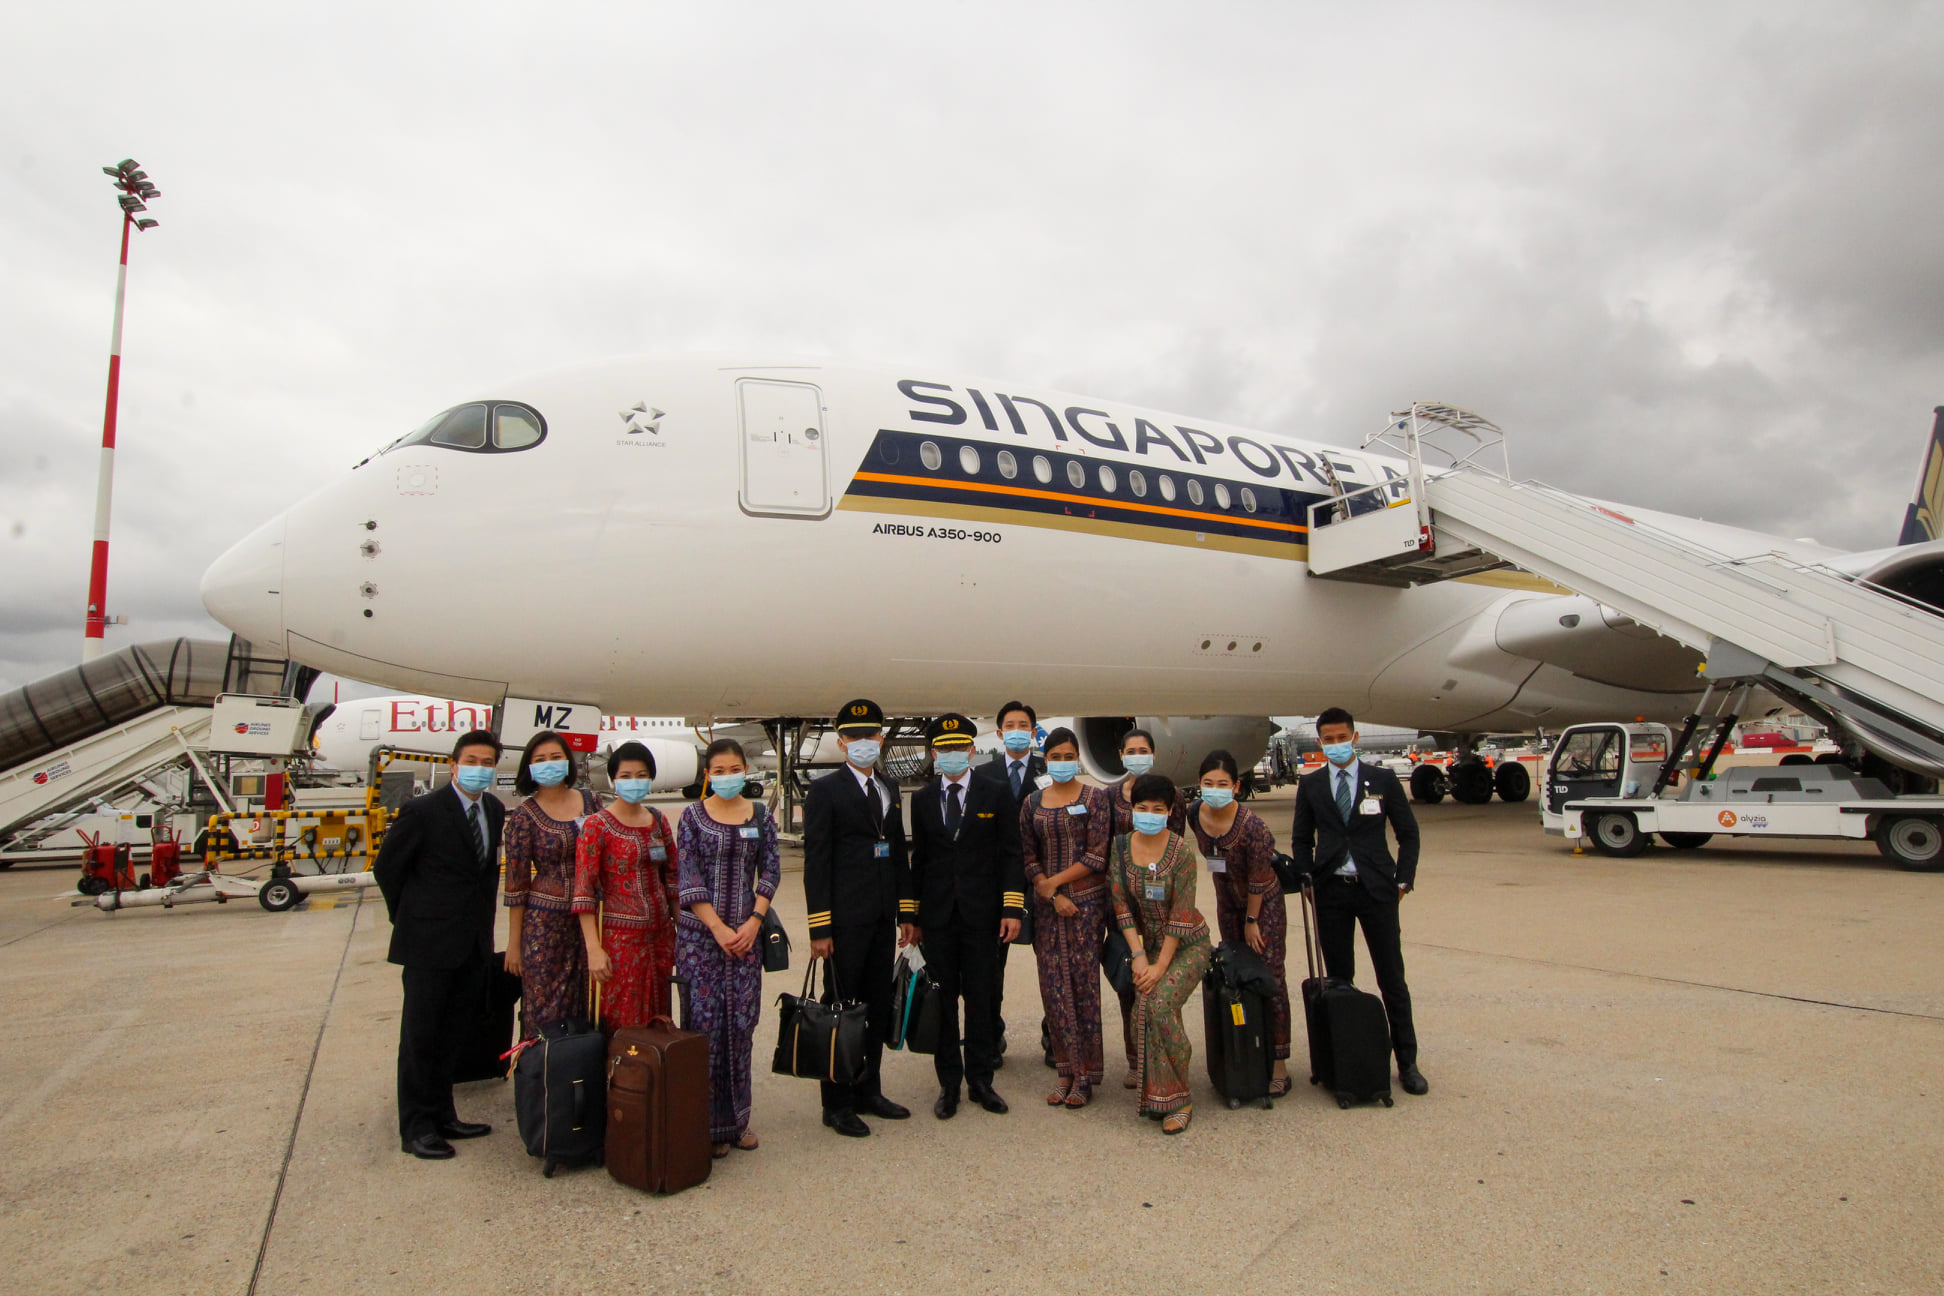 4,3 milliards de dollars : perte historique pour Singapore Airlines 1 Air Journal